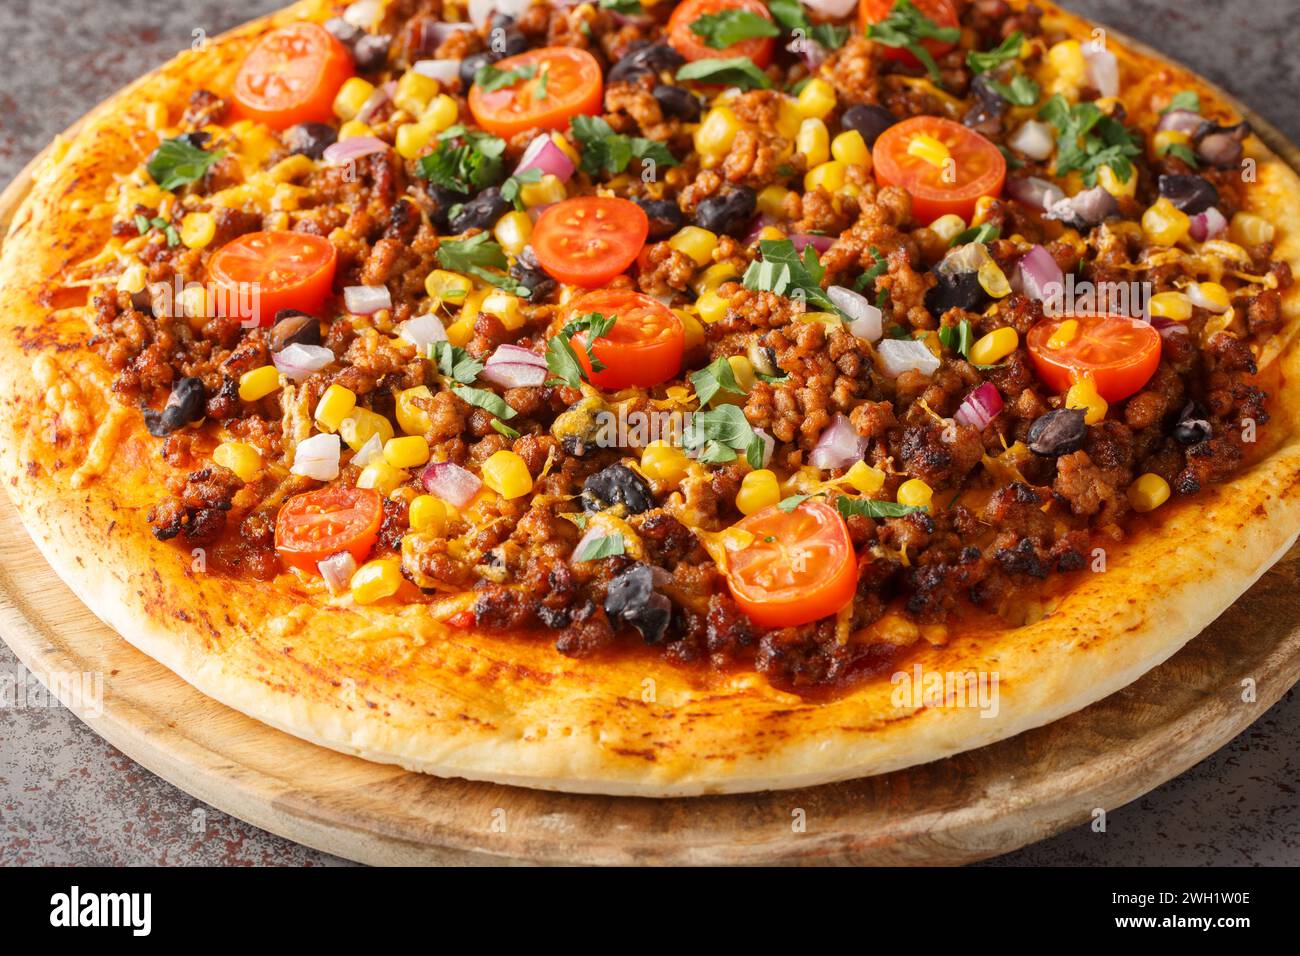 Pizza Tex Mex taco chaude avec bœuf haché, salsa, fromage cheddar et épices mexicaines gros plan sur une planche de bois sur la table. Horizontal Banque D'Images